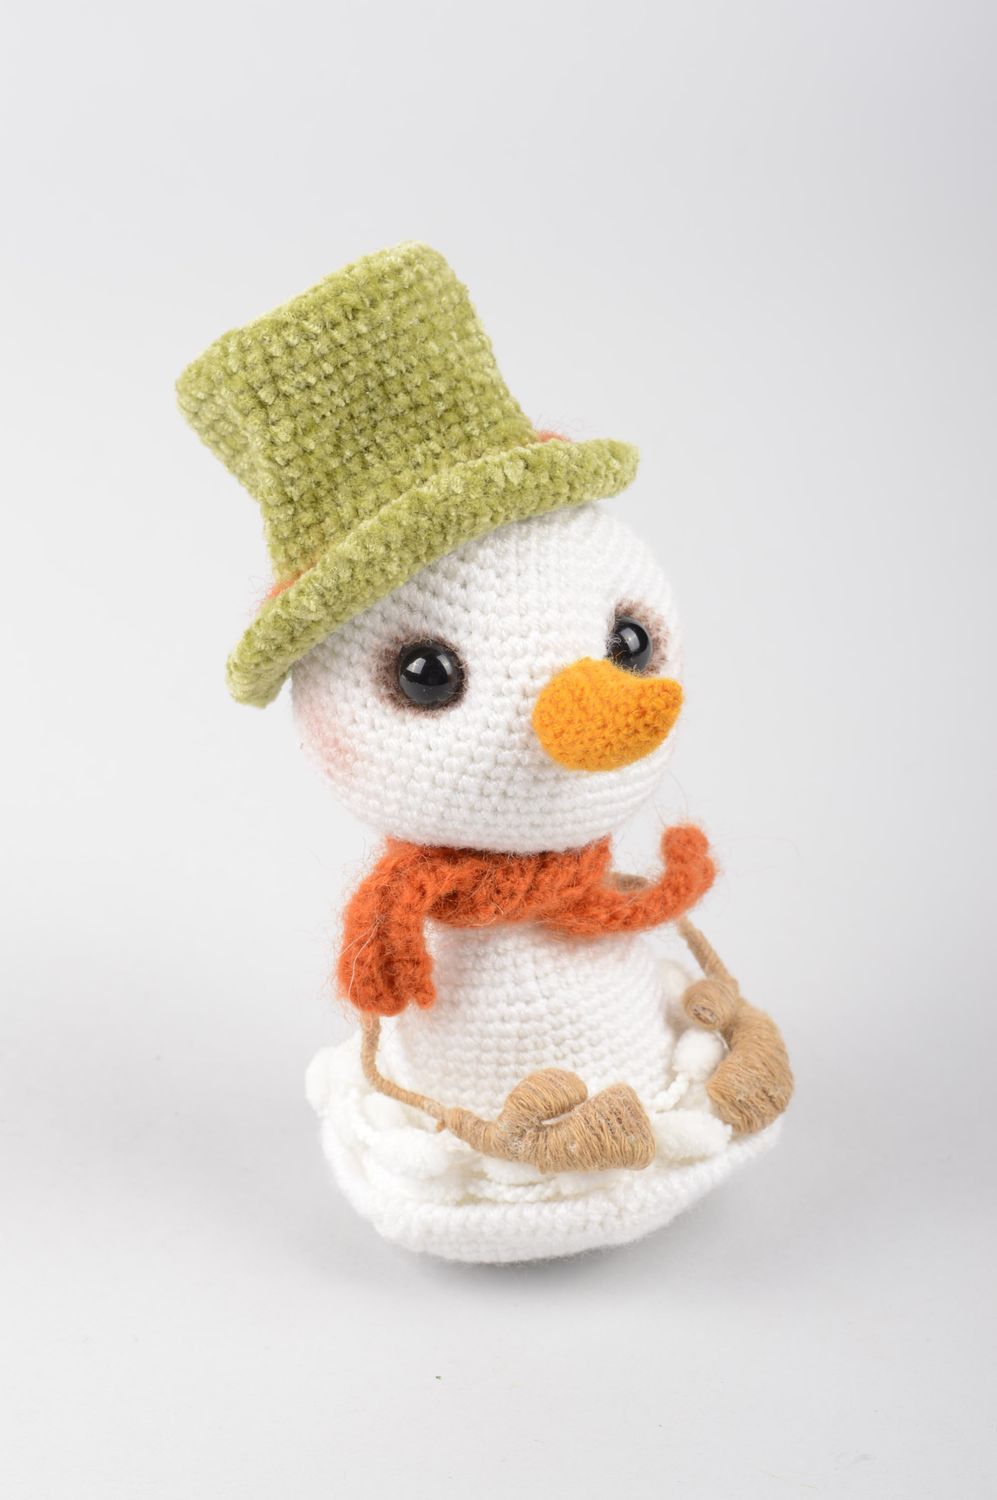 Игрушка снеговик ручной работы мягкая игрушка вязаная детская игрушка милая фото 2